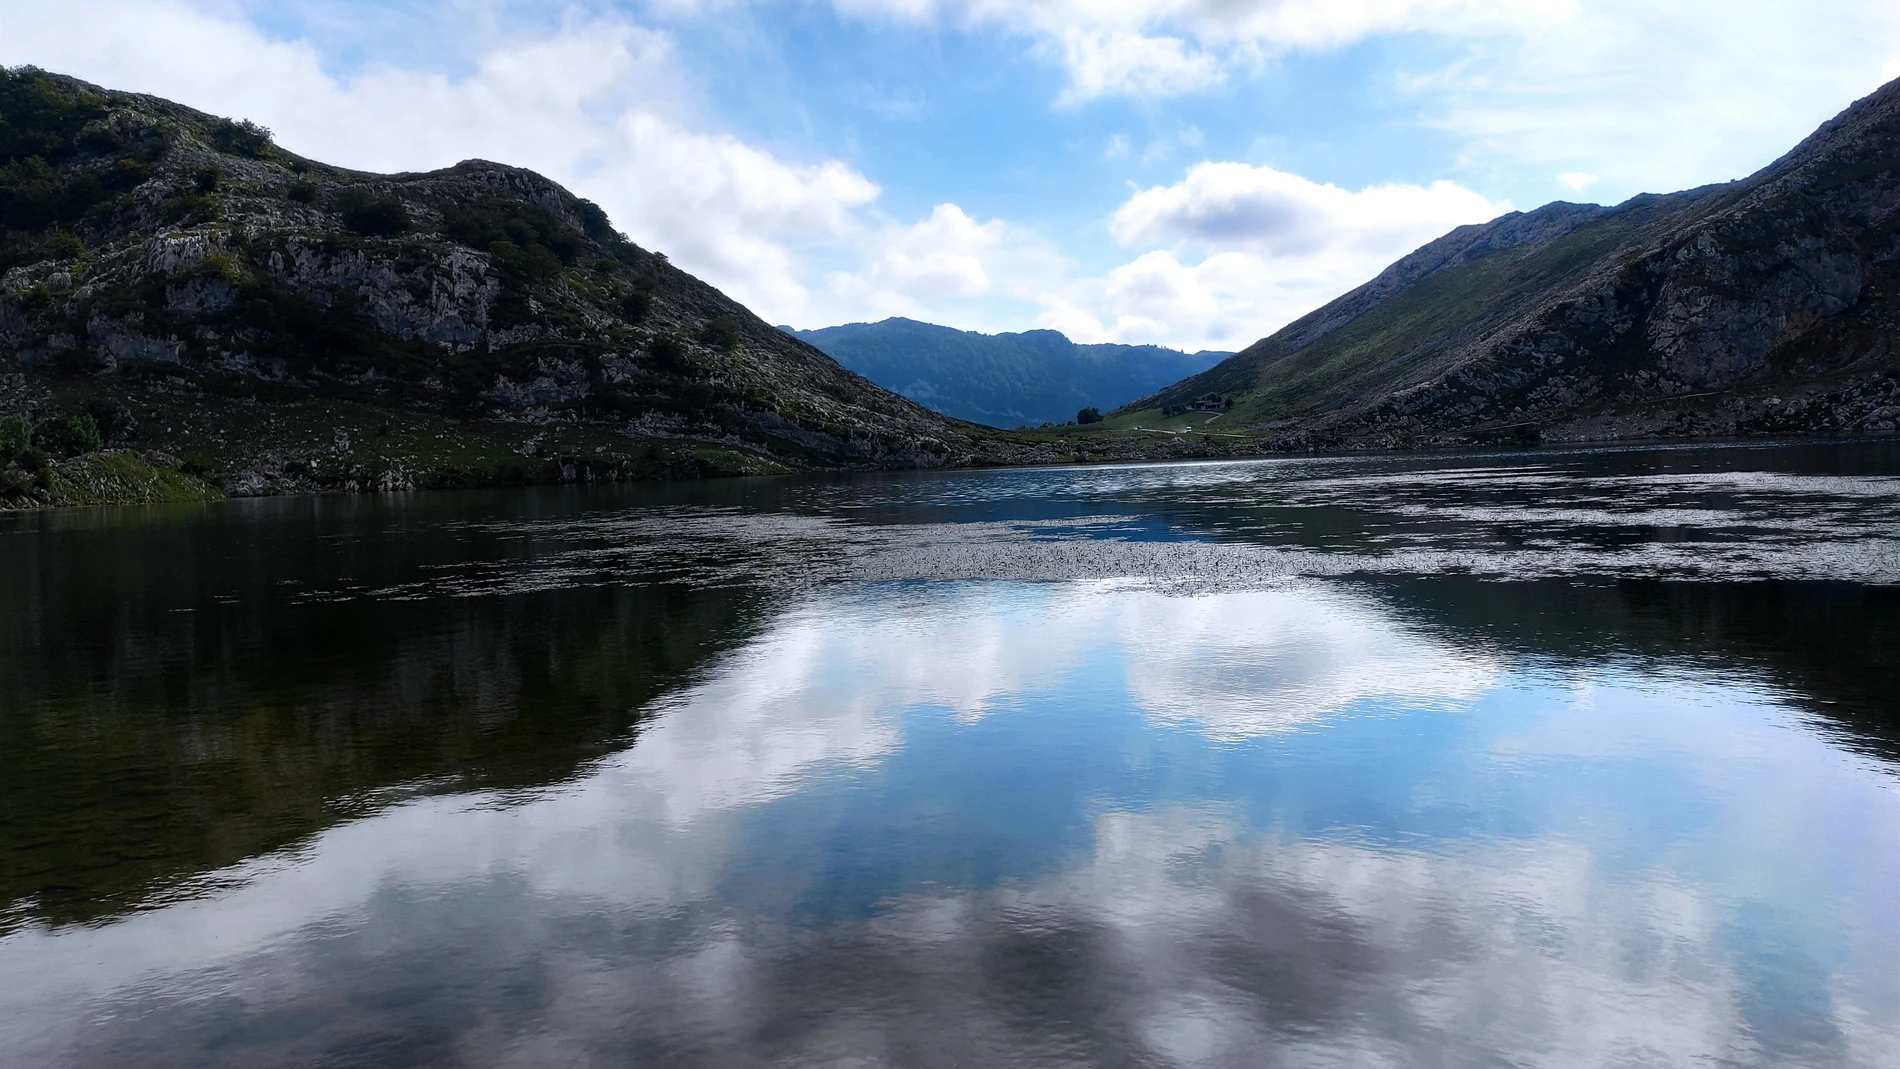 Lago Enol, uno de los Lagos de Covadonga, en los Picos de Europa.